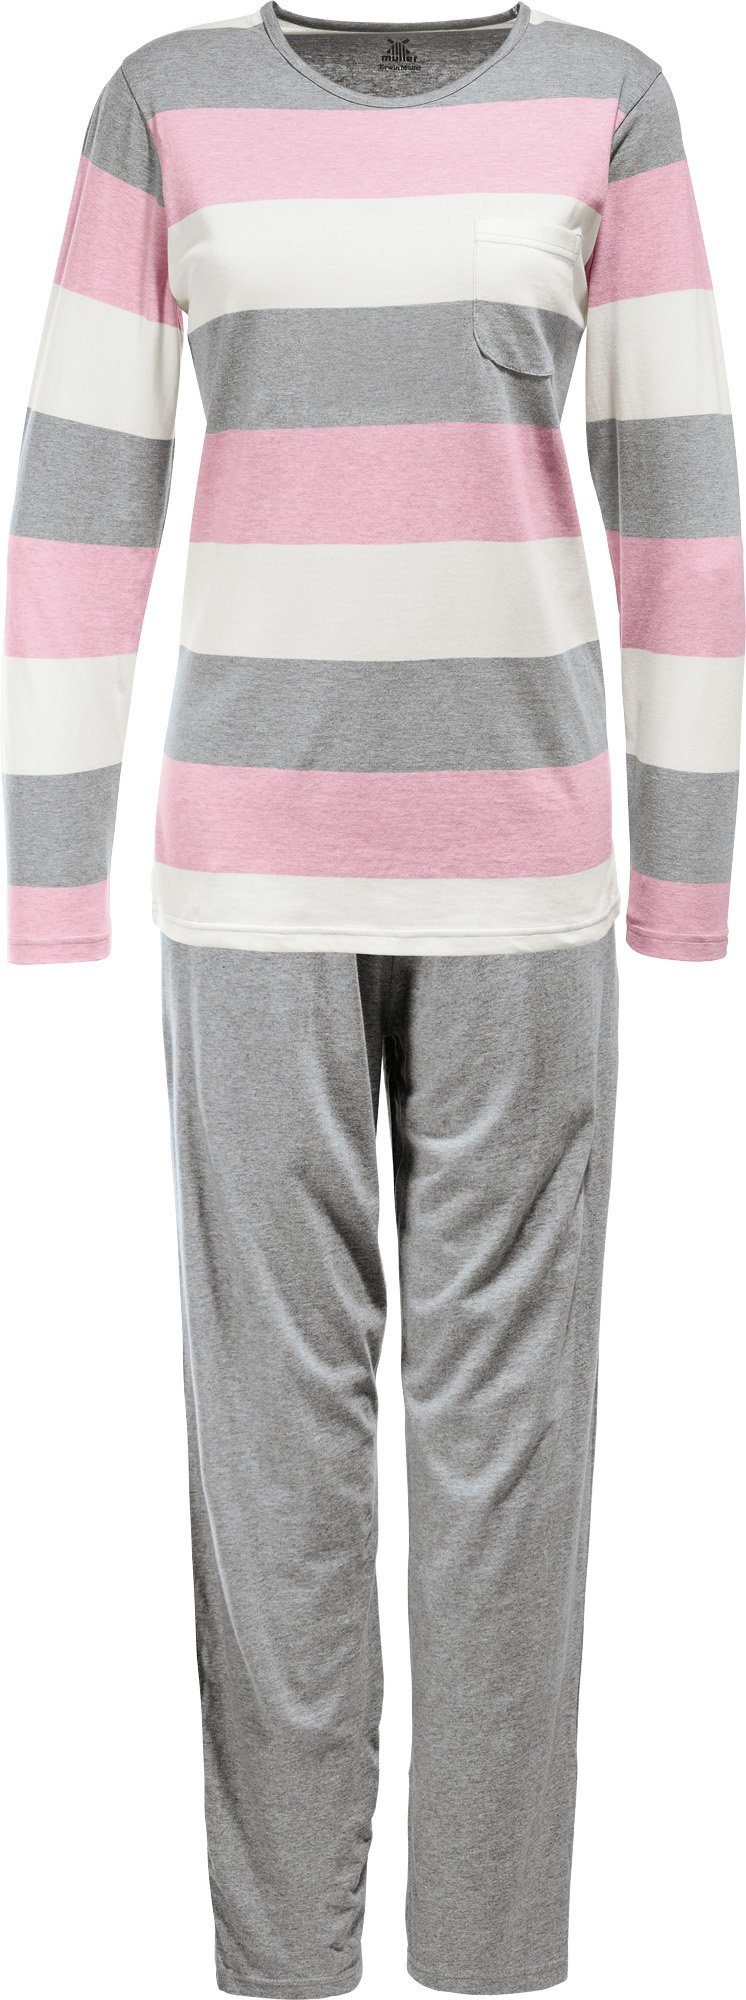 Erwin Müller Pyjama Damen-Schlafanzug Single-Jersey Streifen rosé